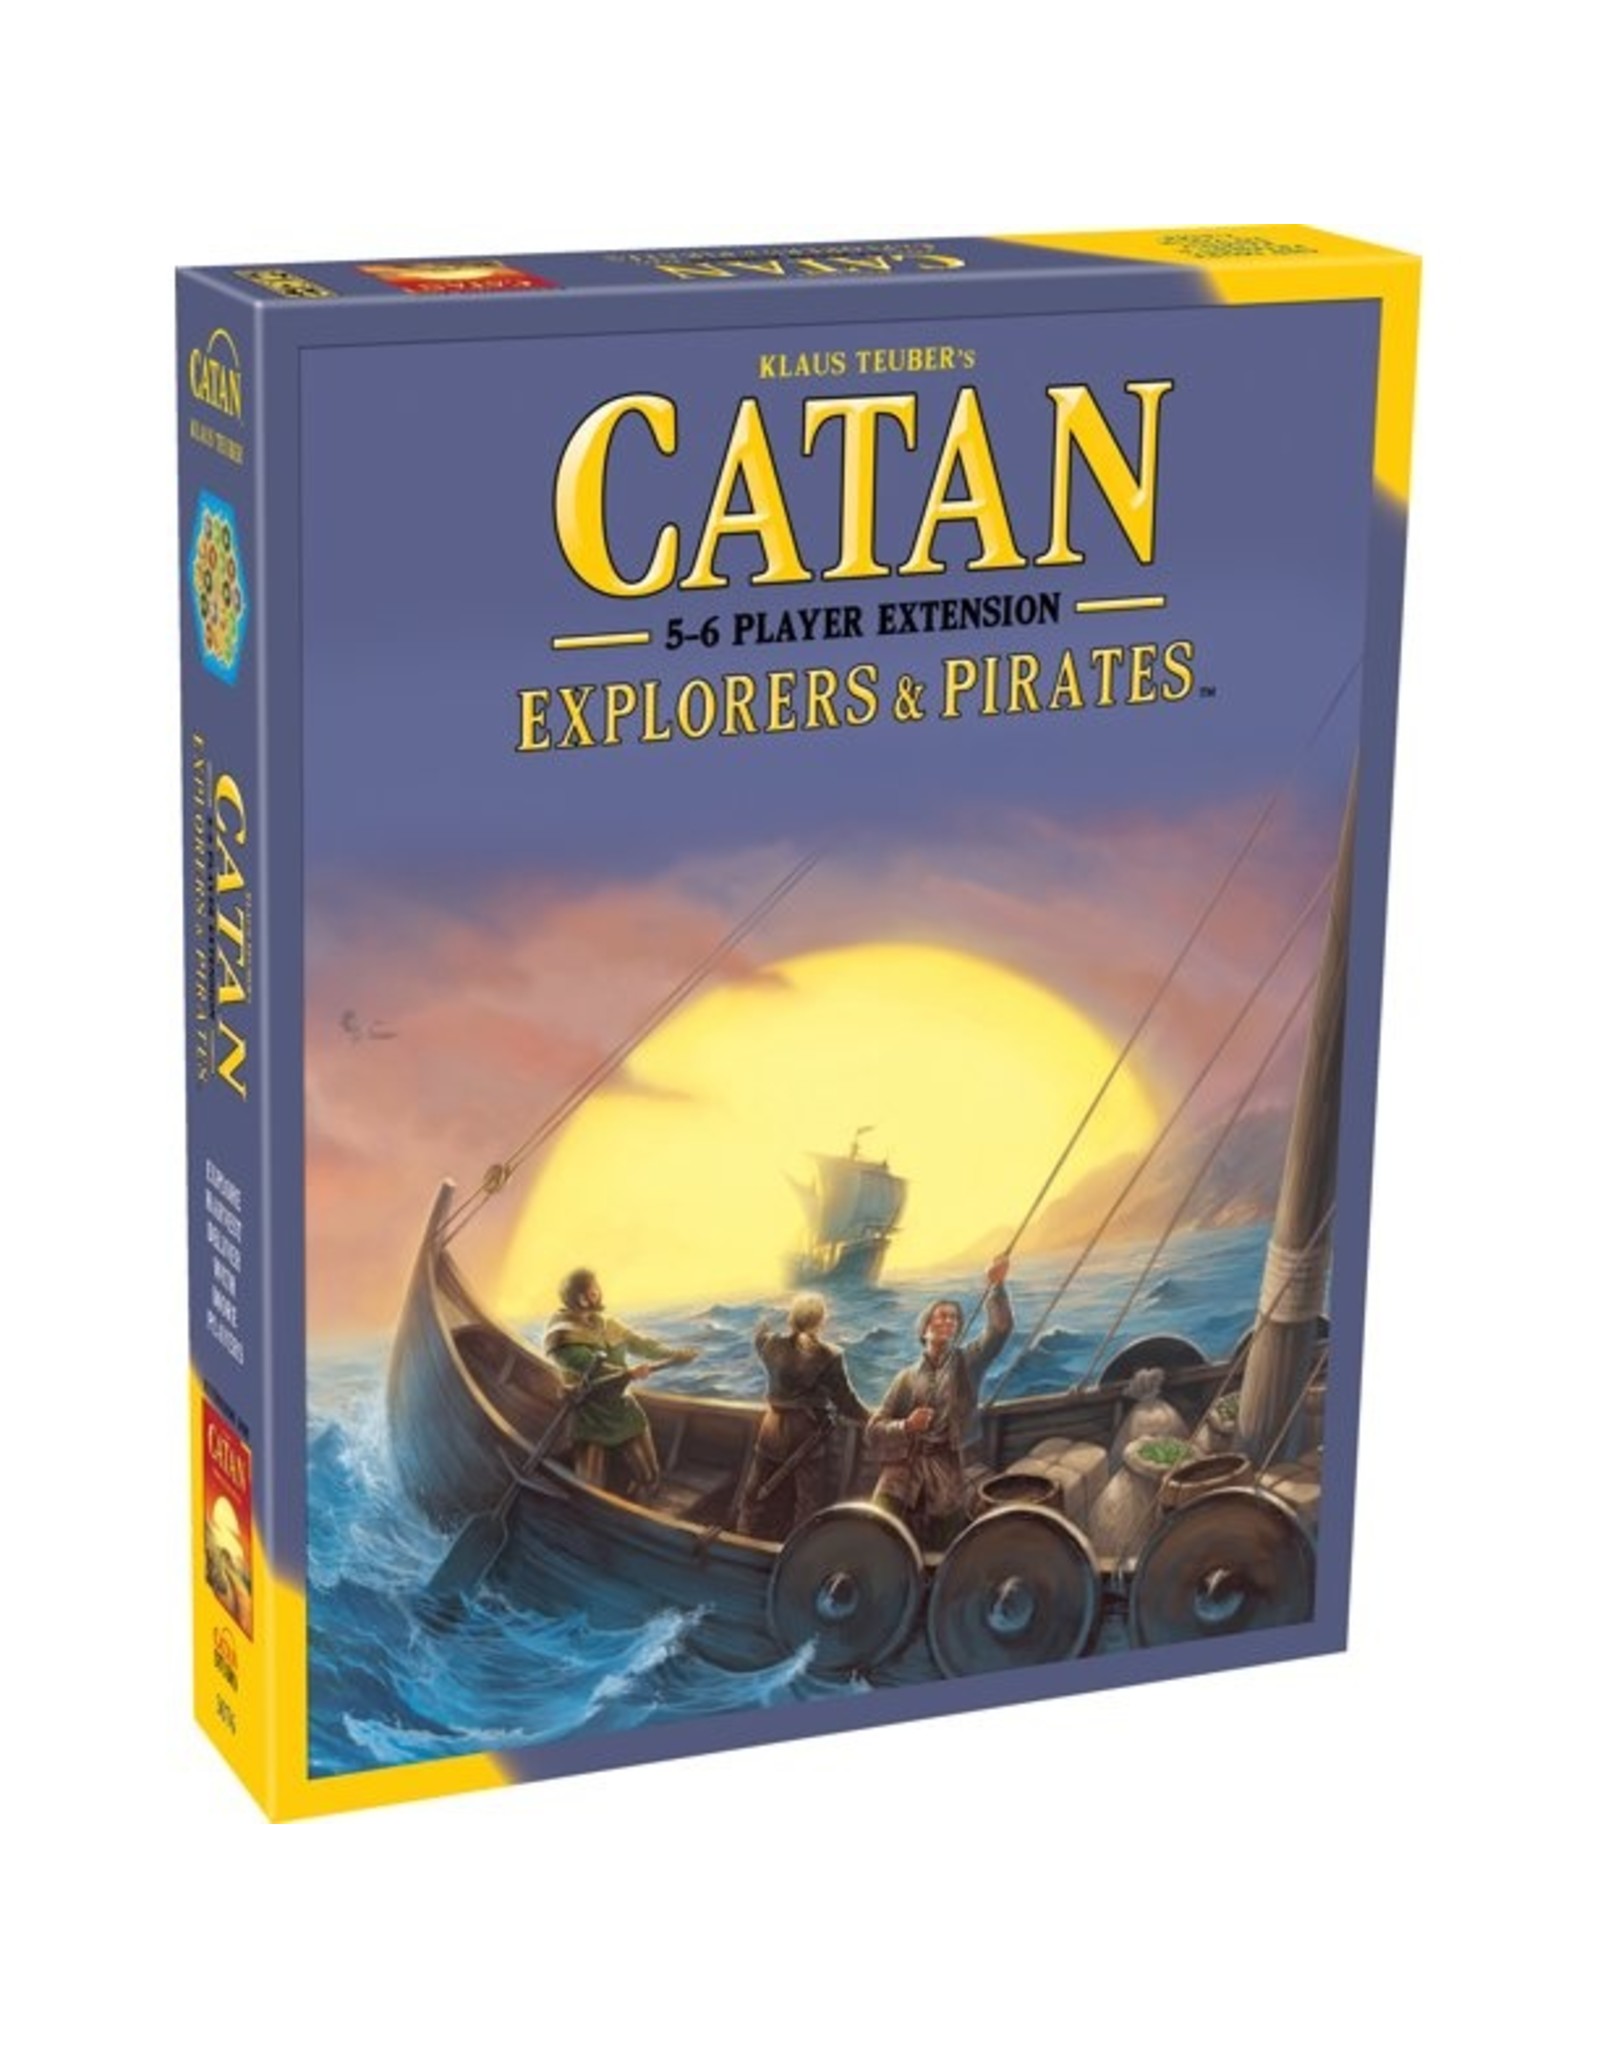 Catan Catan Explorers & Pirates: 5-6 Player Extension